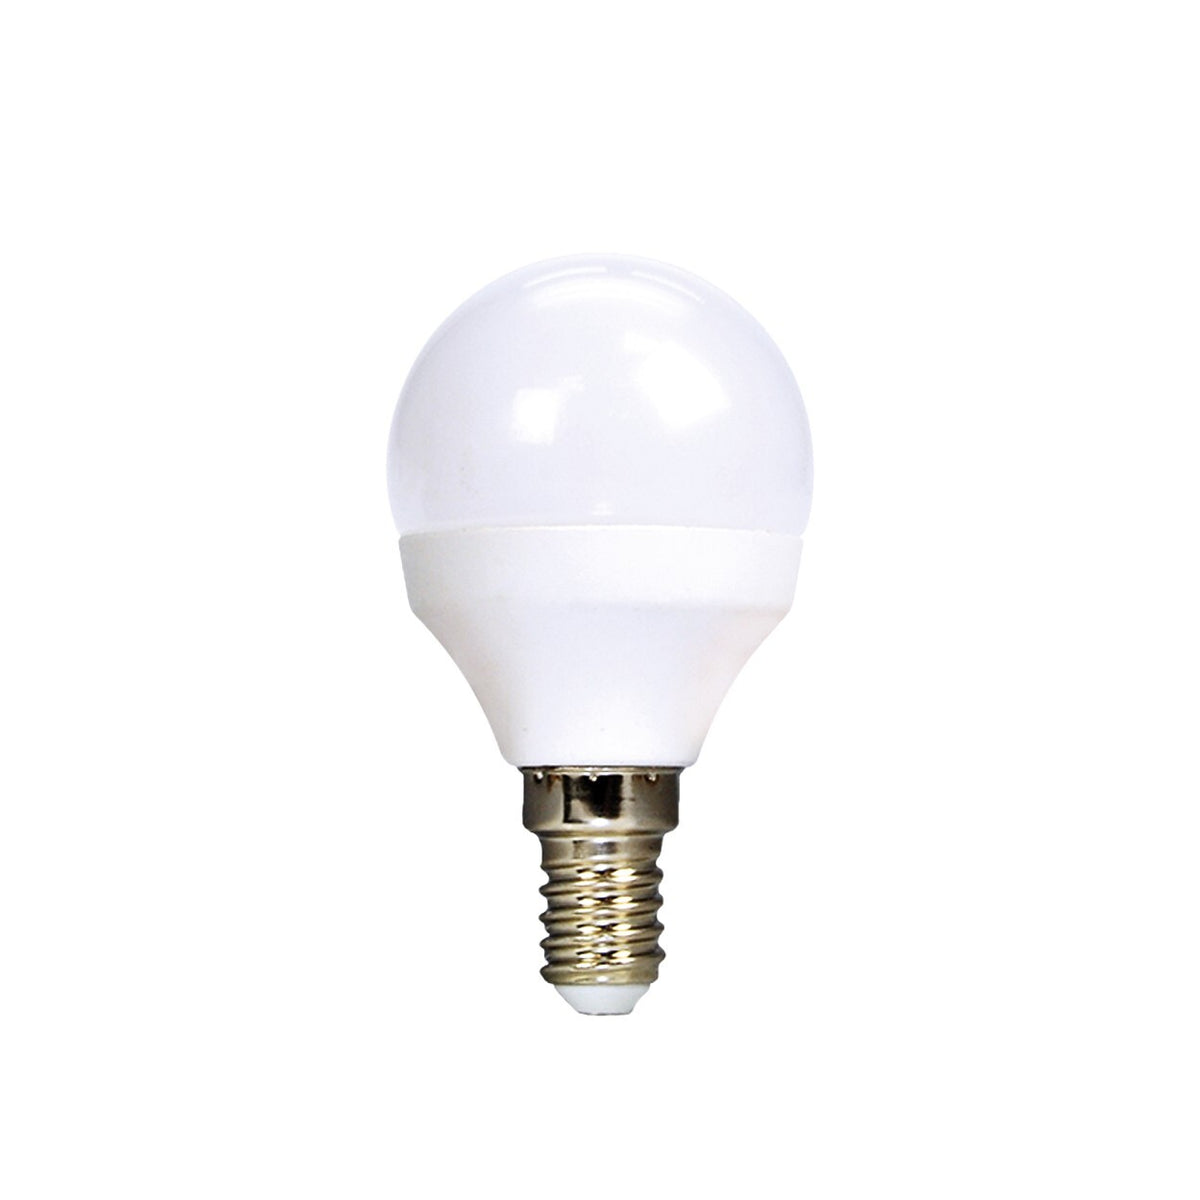 LED žiarovka Ecolux WZ4333, E14, 6W, guľatá, teplá biela, 3ks